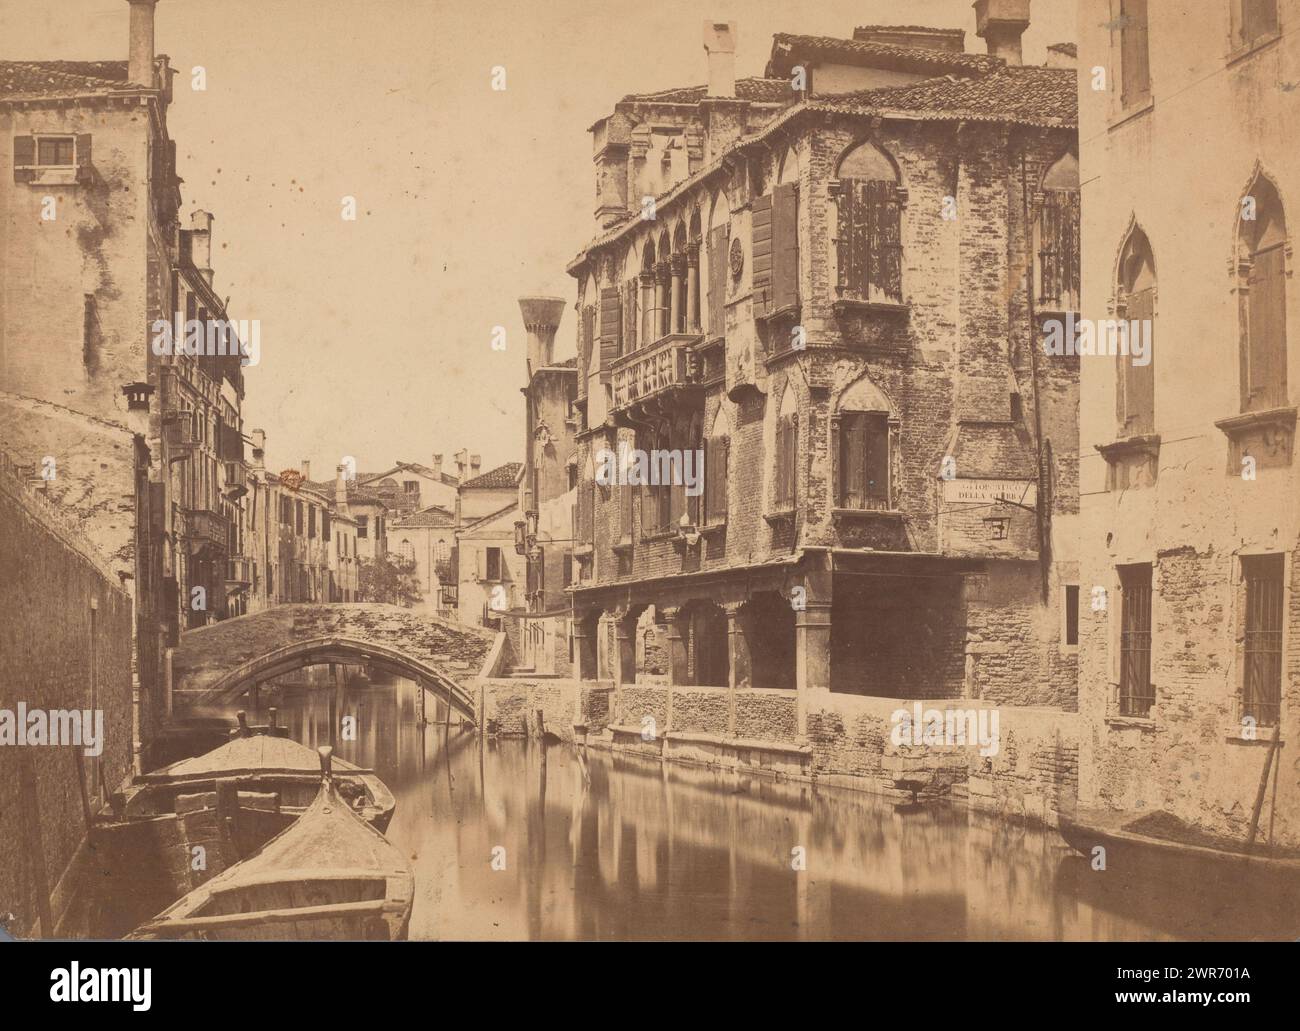 Canal à Venise, Italie, anonyme, Venise, 1851 - 1900, carton, impression albumine, hauteur 255 mm × largeur 353 mm, photographie Banque D'Images